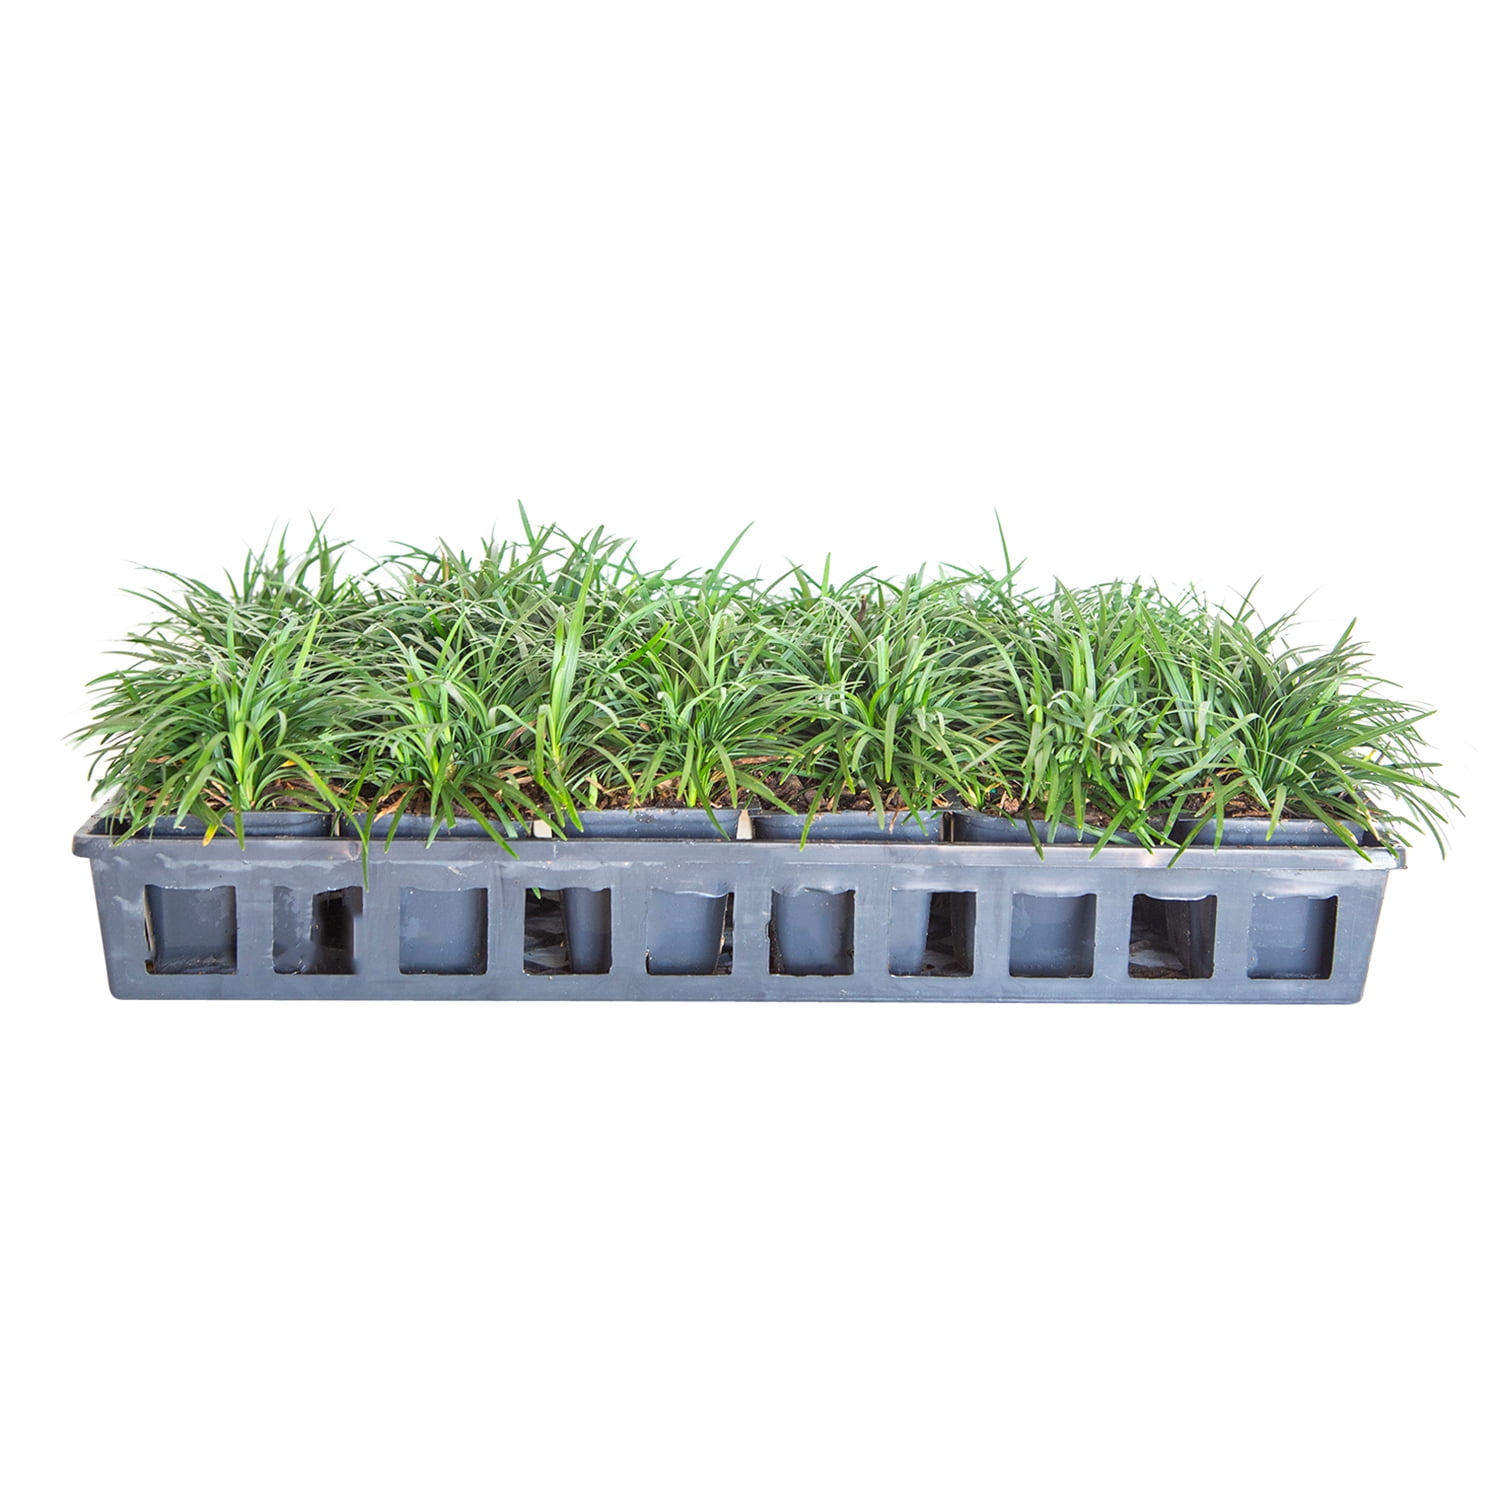 18 Miniature Grasses Artificial Succulents Plants Doll House Landscape 